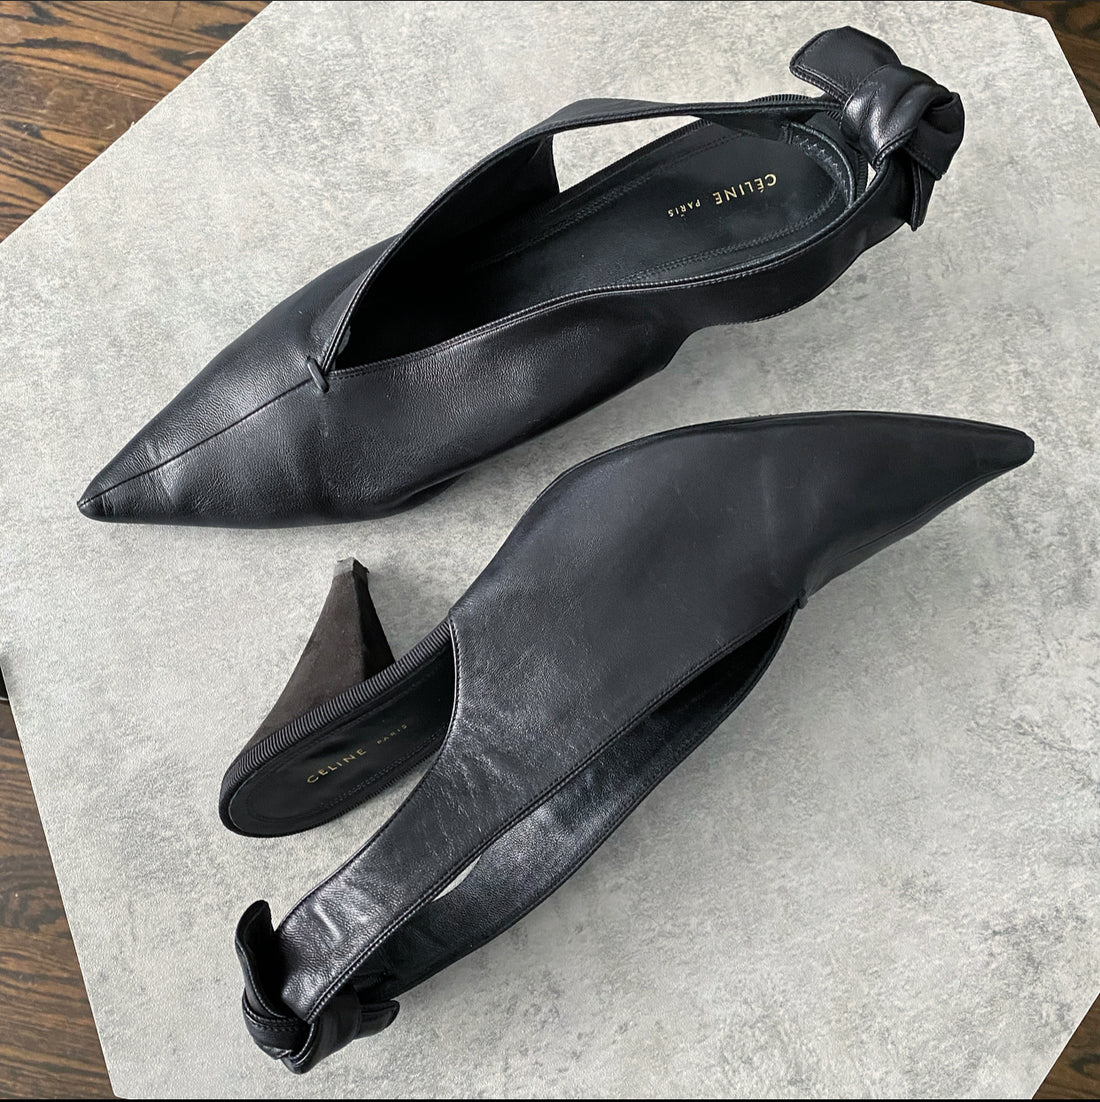 Celine Black Leather V-Neck Slingback Heels - 40